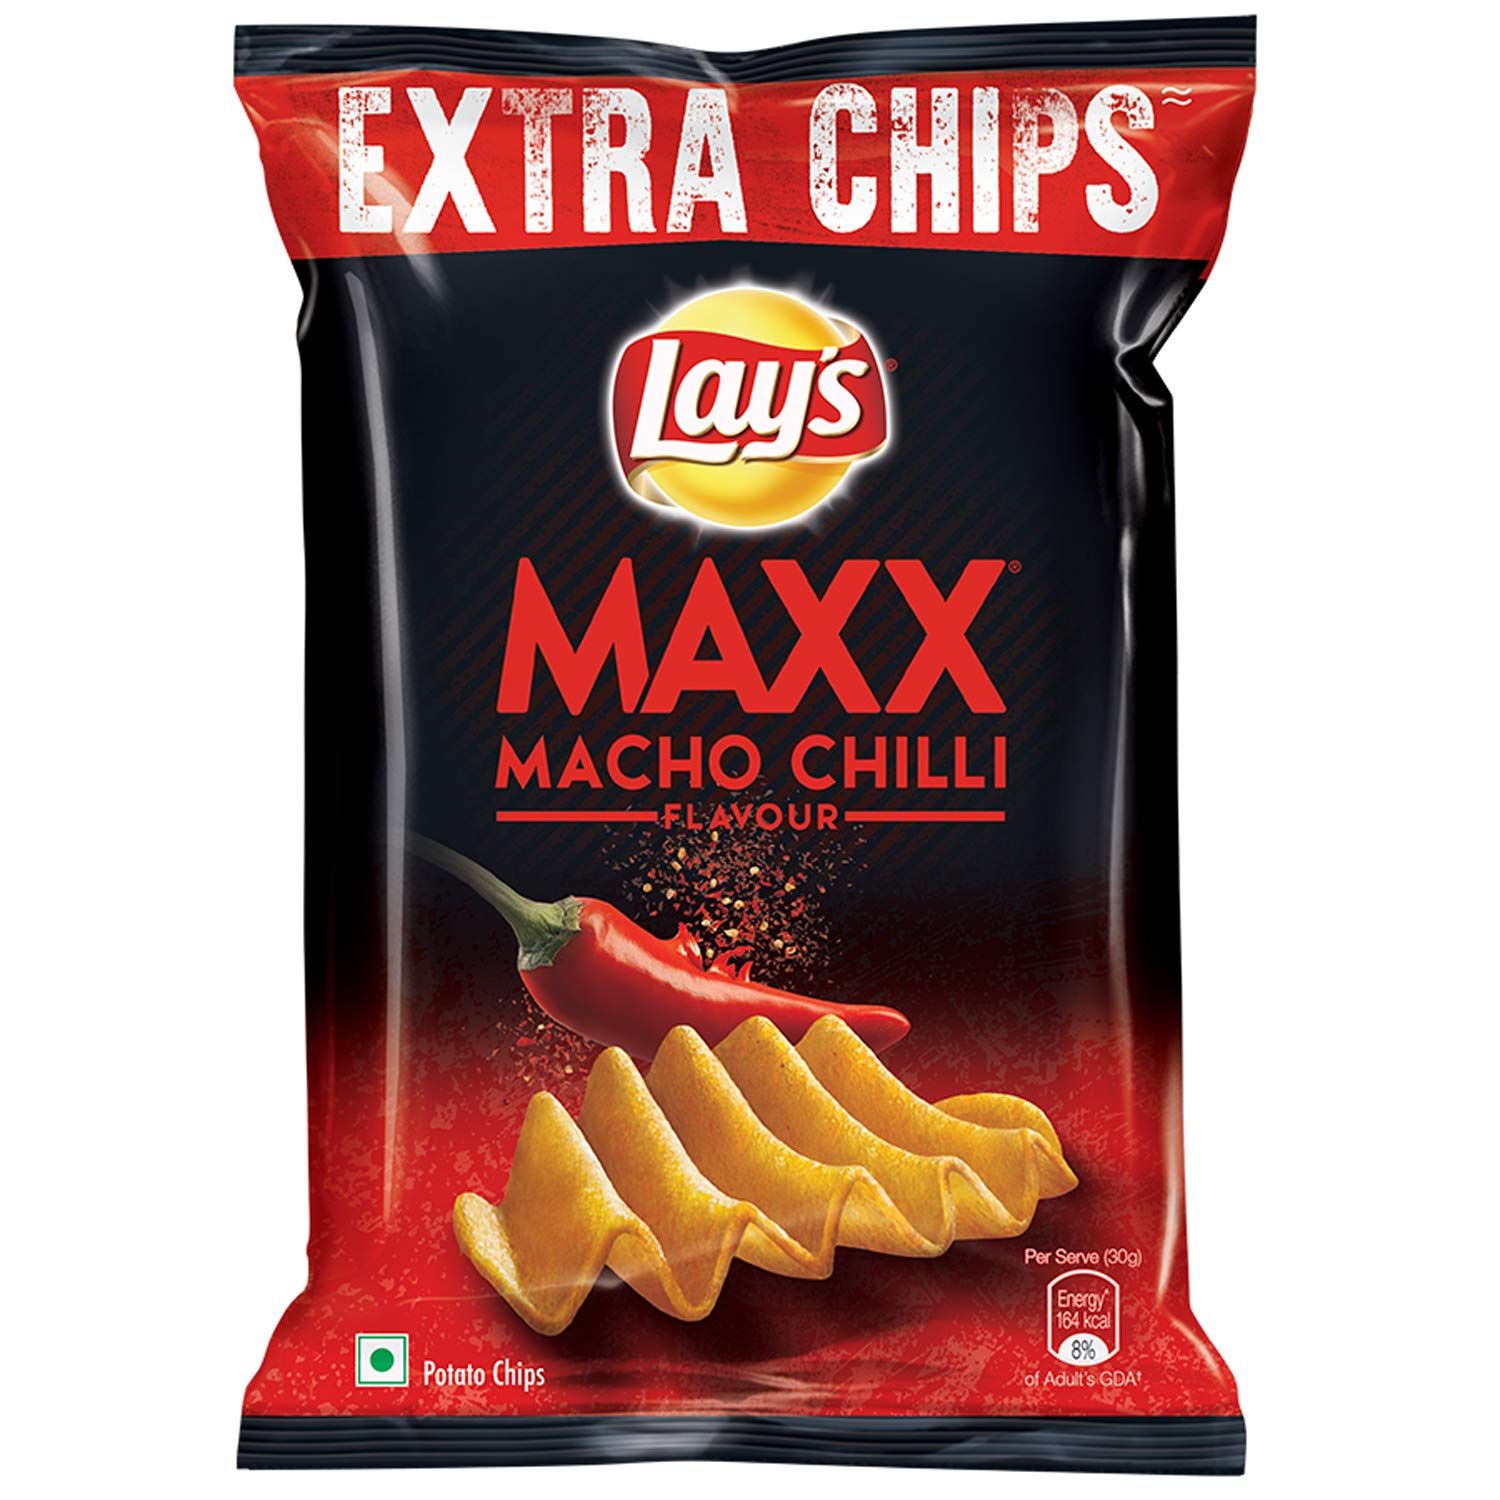 Lay's Maxx Macho Chilli Flavour Image